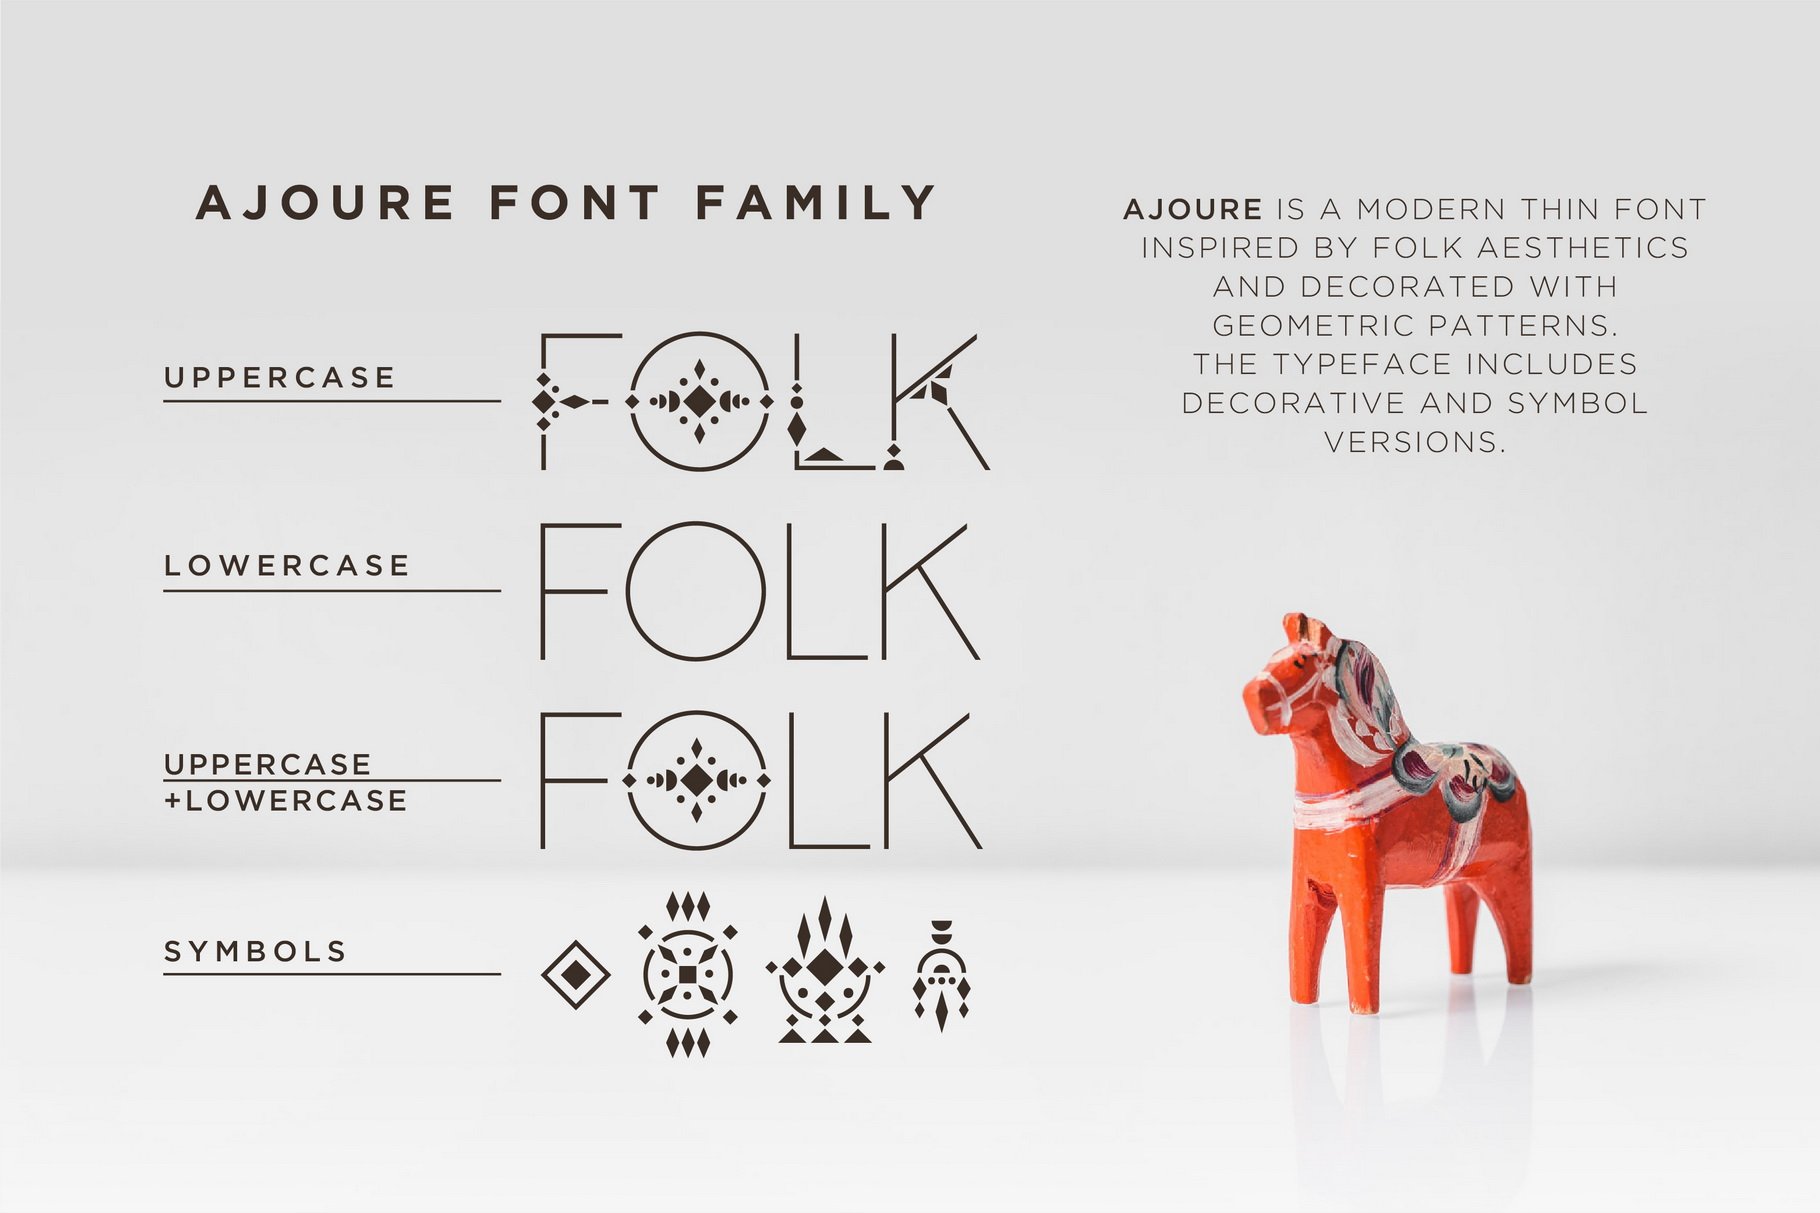 Ajoure - Folk Art Logo Font Family preview image.